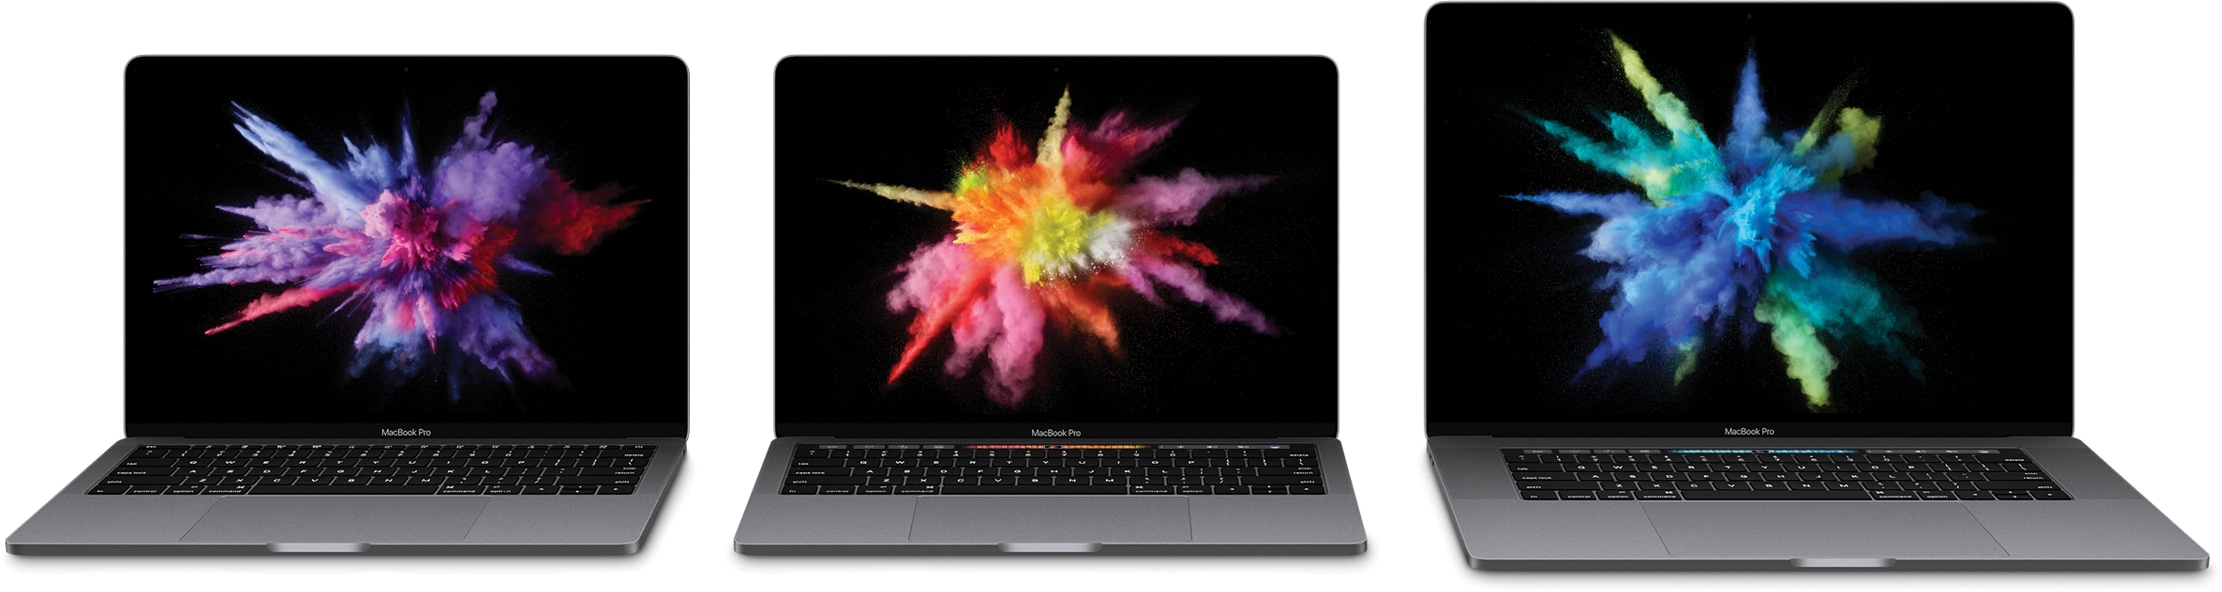 Nova linha completa de MacBooks Pro